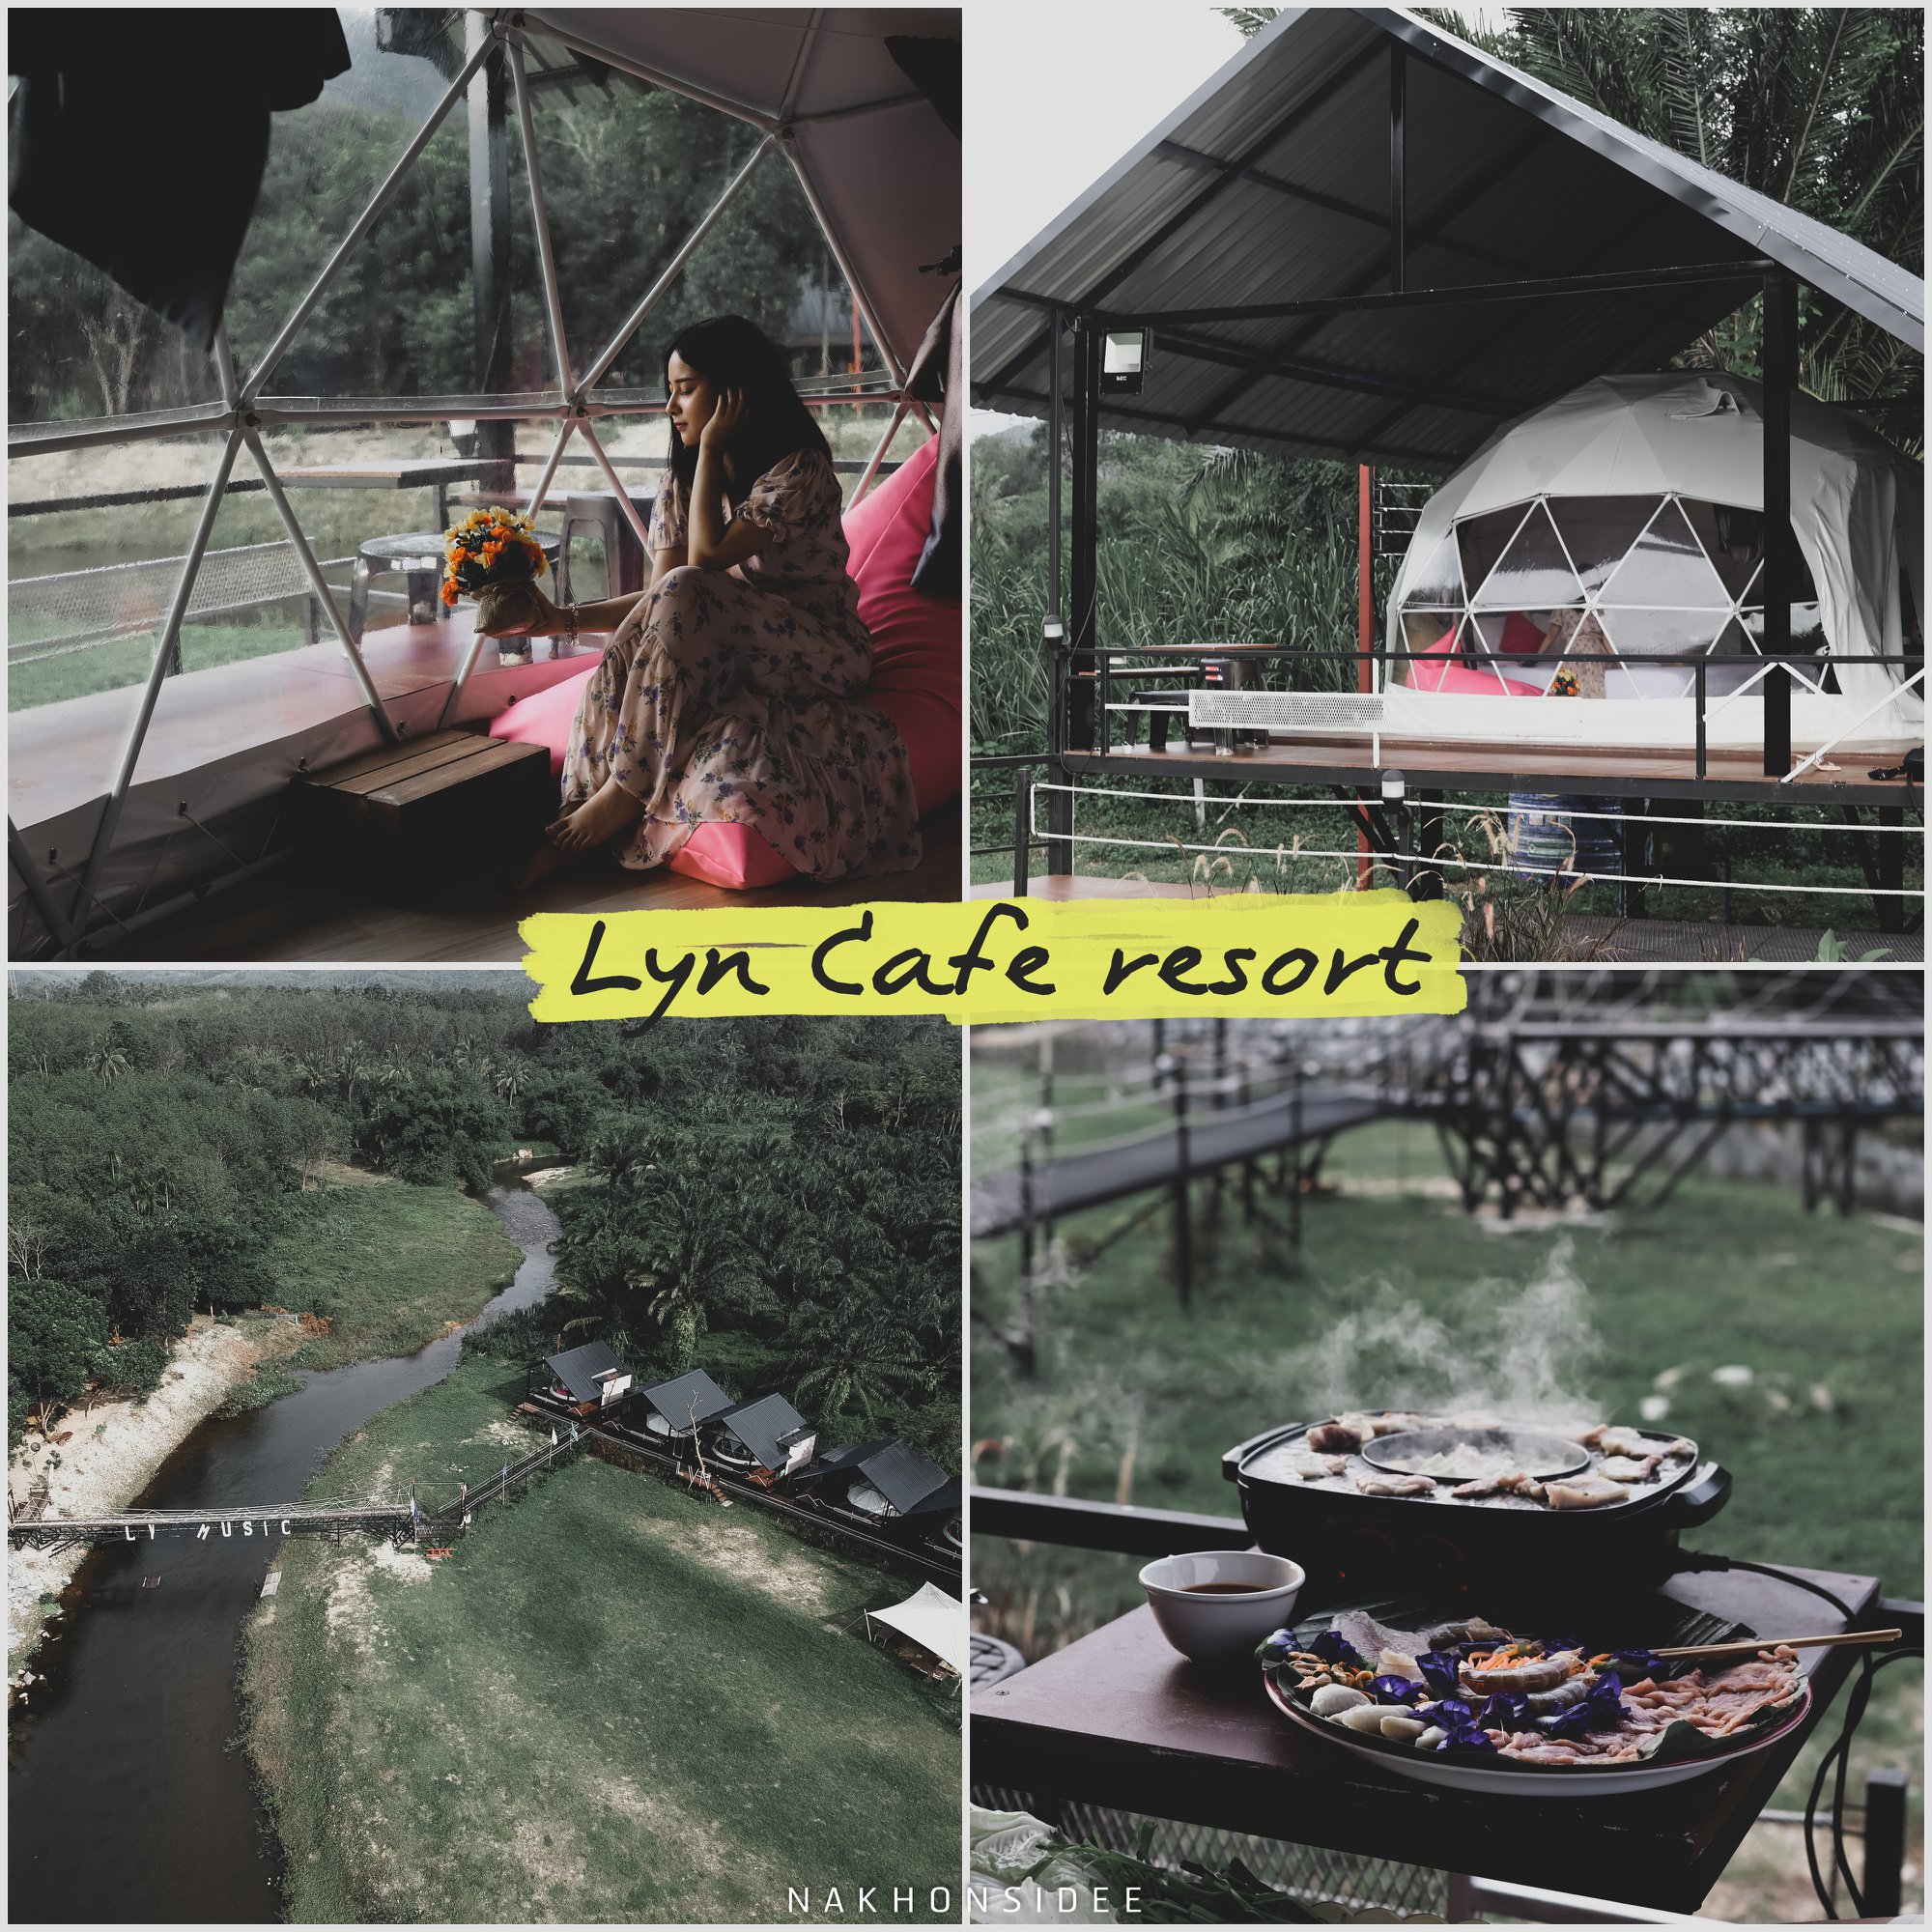  Lyn-Cafe-Resort---Camping-รีสอร์ทที่พักสุดสวยริมลำธารช้างกลาง-มีแบบทั้งเต๊นท์-ทั้งกระโจม-และบ้าน-A-Frame-บอกเลยว่ากว้างและสวยมากๆ-ใครอยากมาพักแบบธรรมชาติต้องที่นี่แหละ-คลิกที่นี่
 ที่พัก,ริมลำธาร,นครศรีธรรมราช,โรงแรม,รีสอร์ท,วิวหลักล้าน